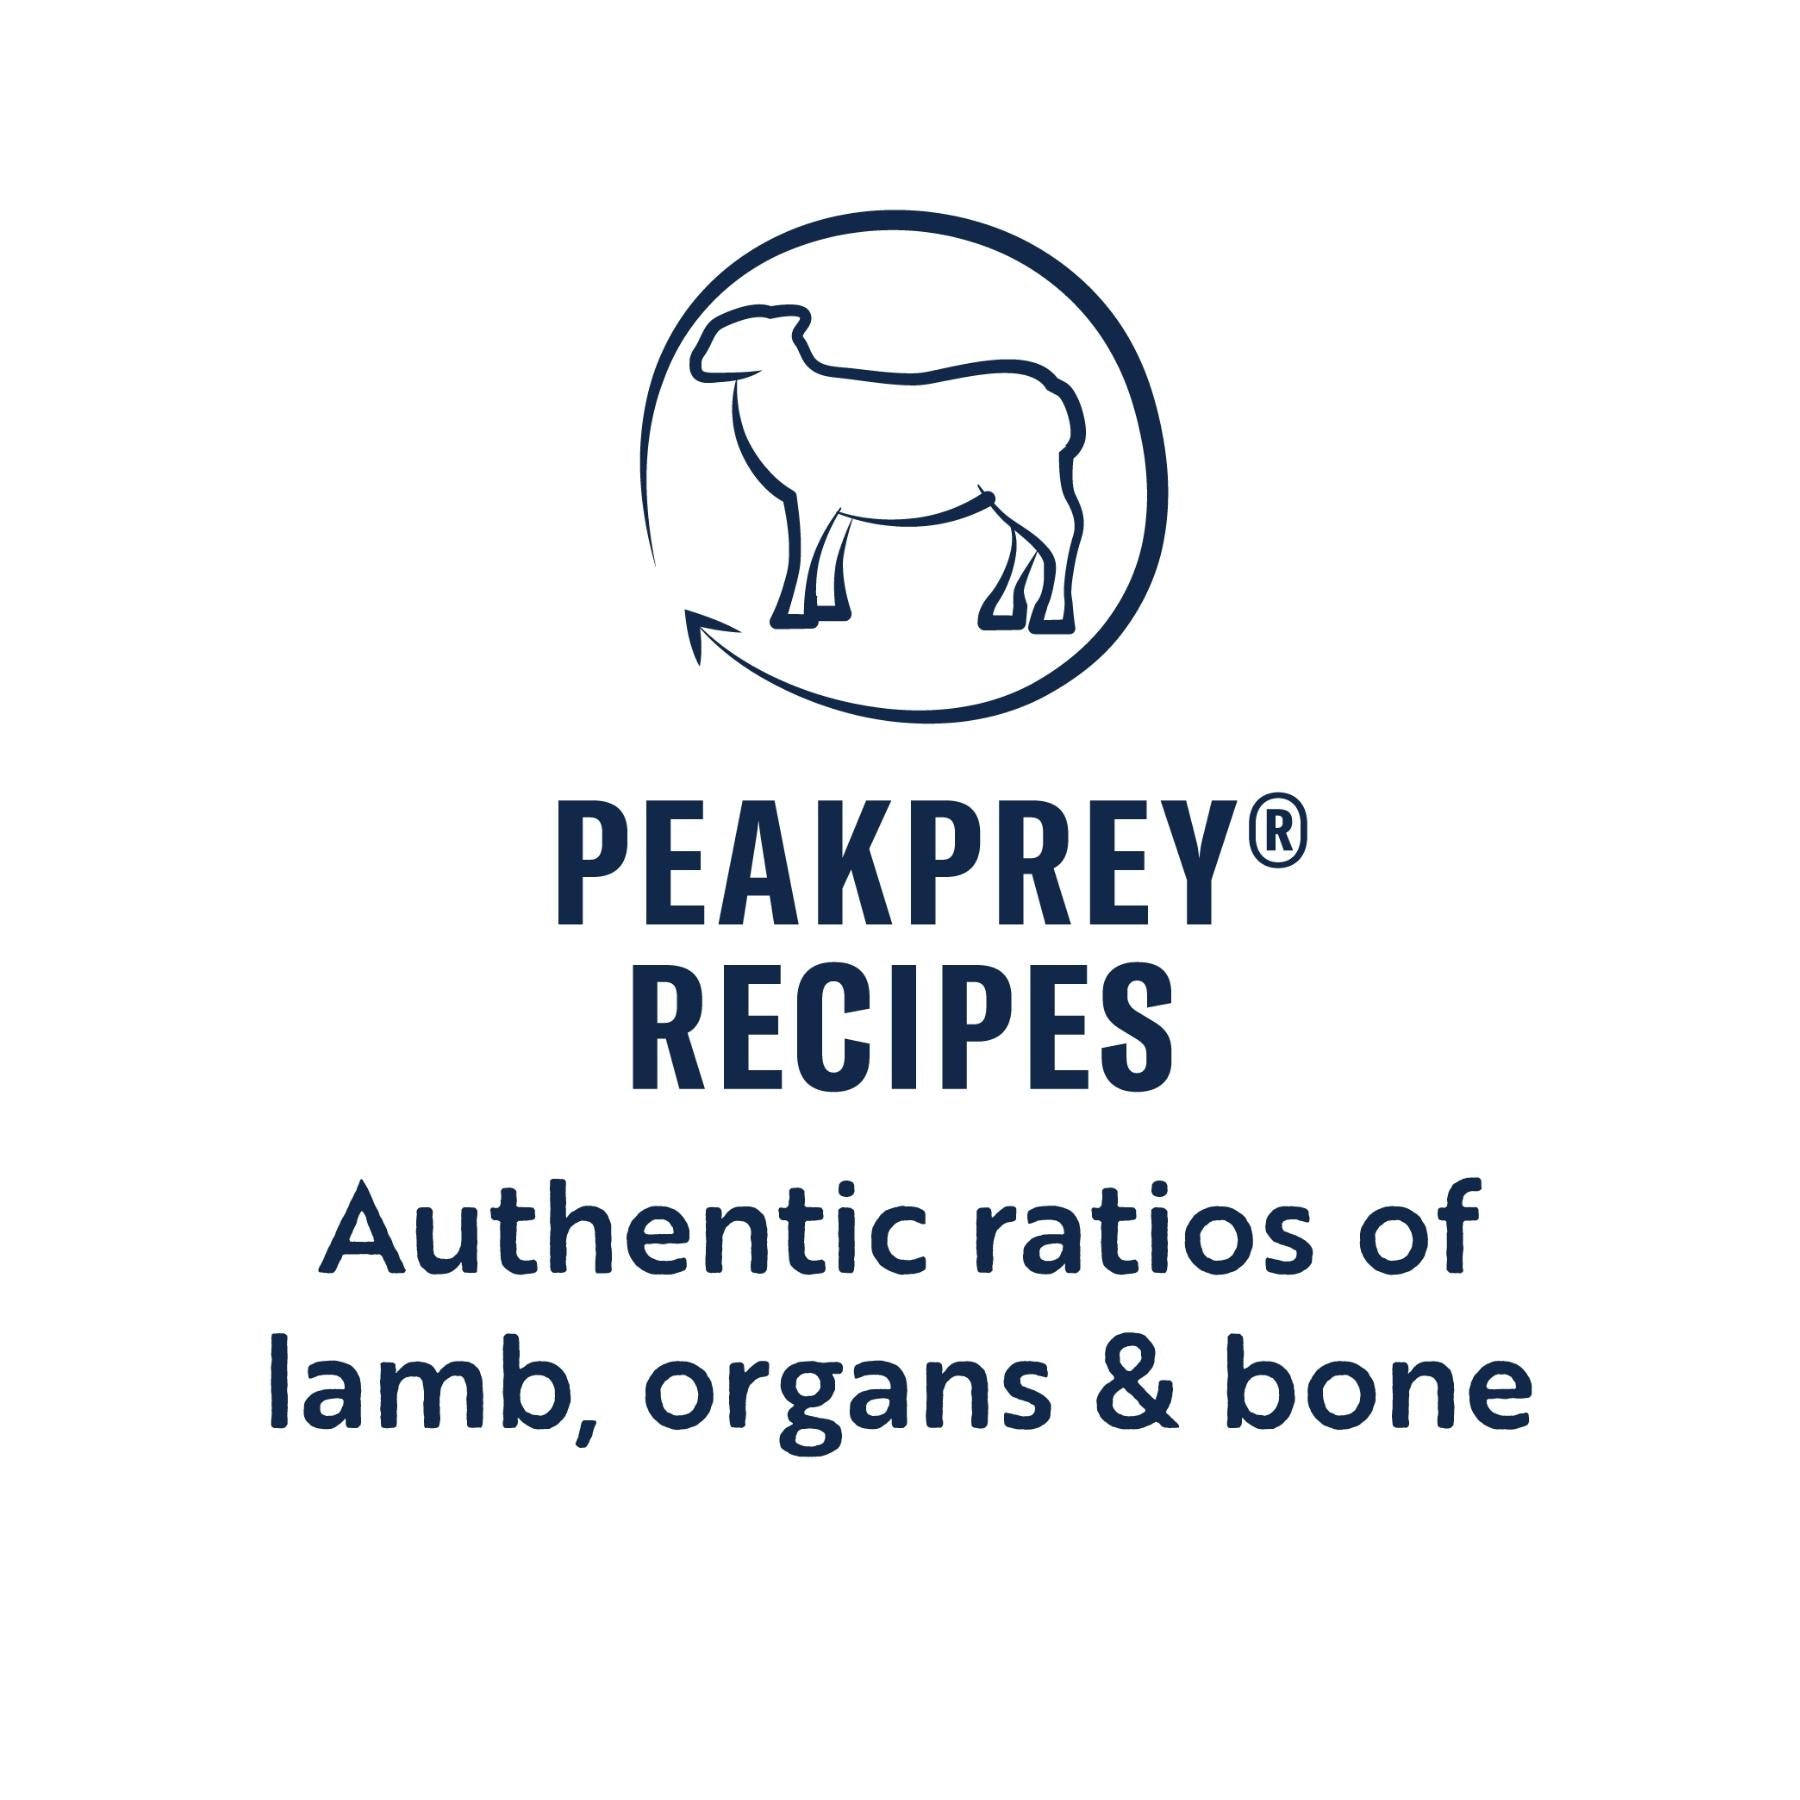 ZIWI Peak Dry Cat Food Mackerel & Lamb Recipe - PeakPrey Recipes